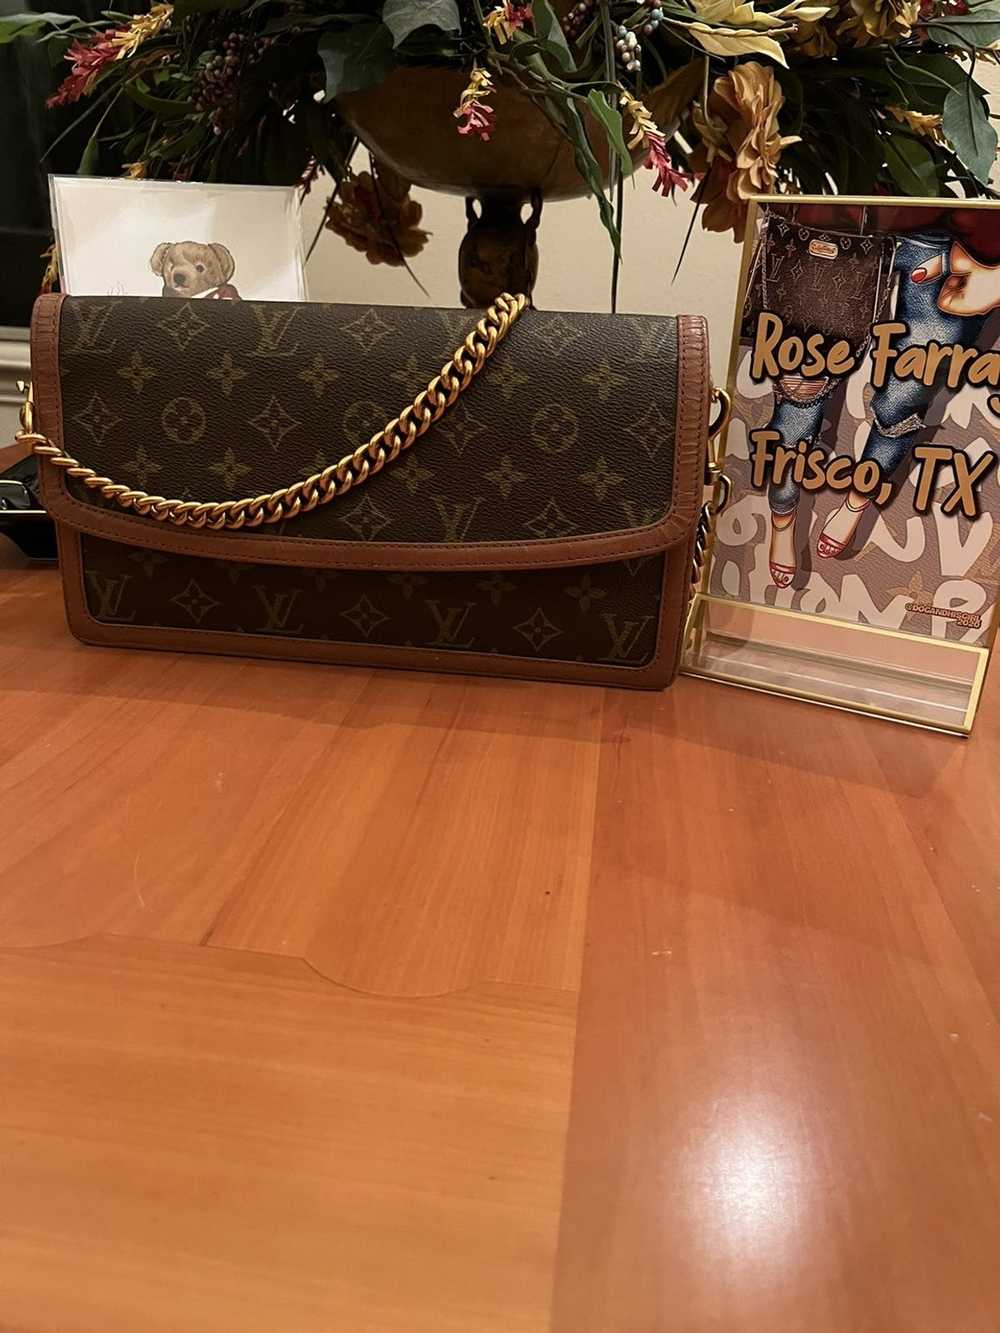 Lot - LOUIS VUITTON POCHETTE en toile Monogram Mini rouge et cuir,  garnitures en laiton doré, sangle amovible 8,5 x 12,5 x 3,5 cmR -  Catalog# 701784 Chanel private collection & Luxury Accessories Online